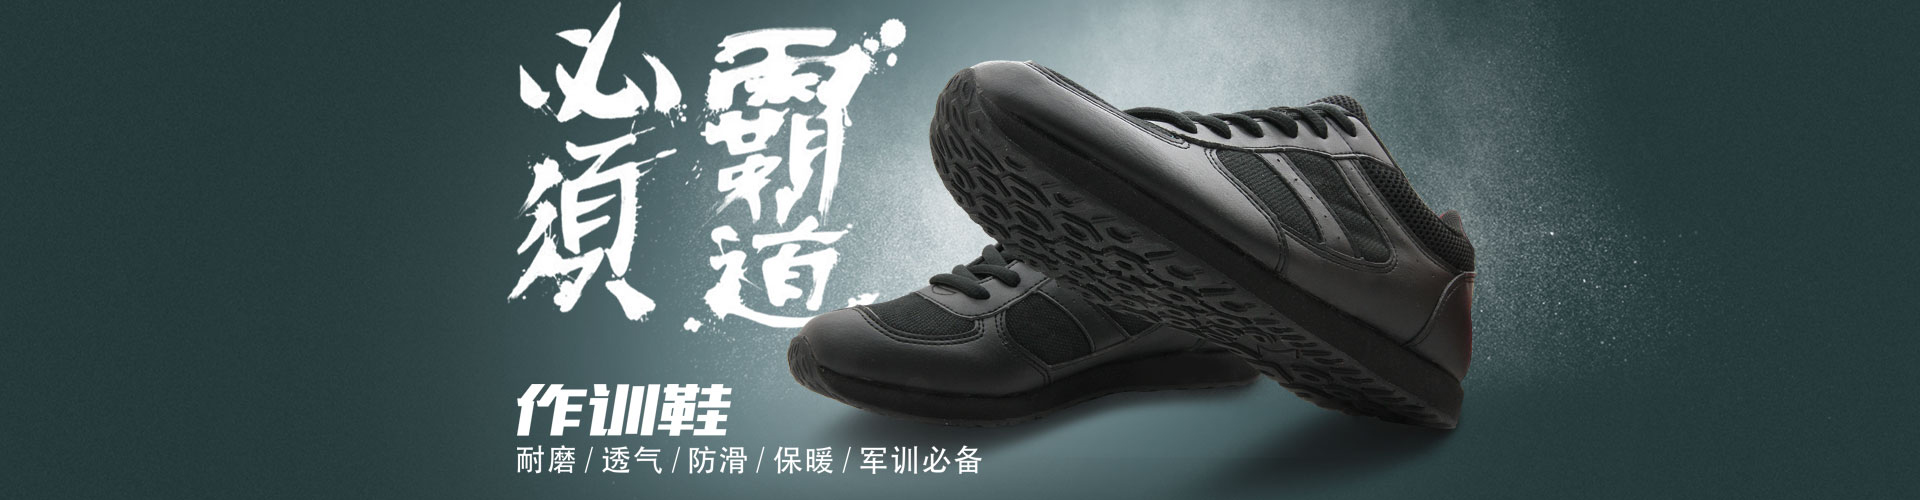 海尔斯新款配发黑色跑步鞋慢跑鞋运动鞋07式作训训练鞋正品 3058